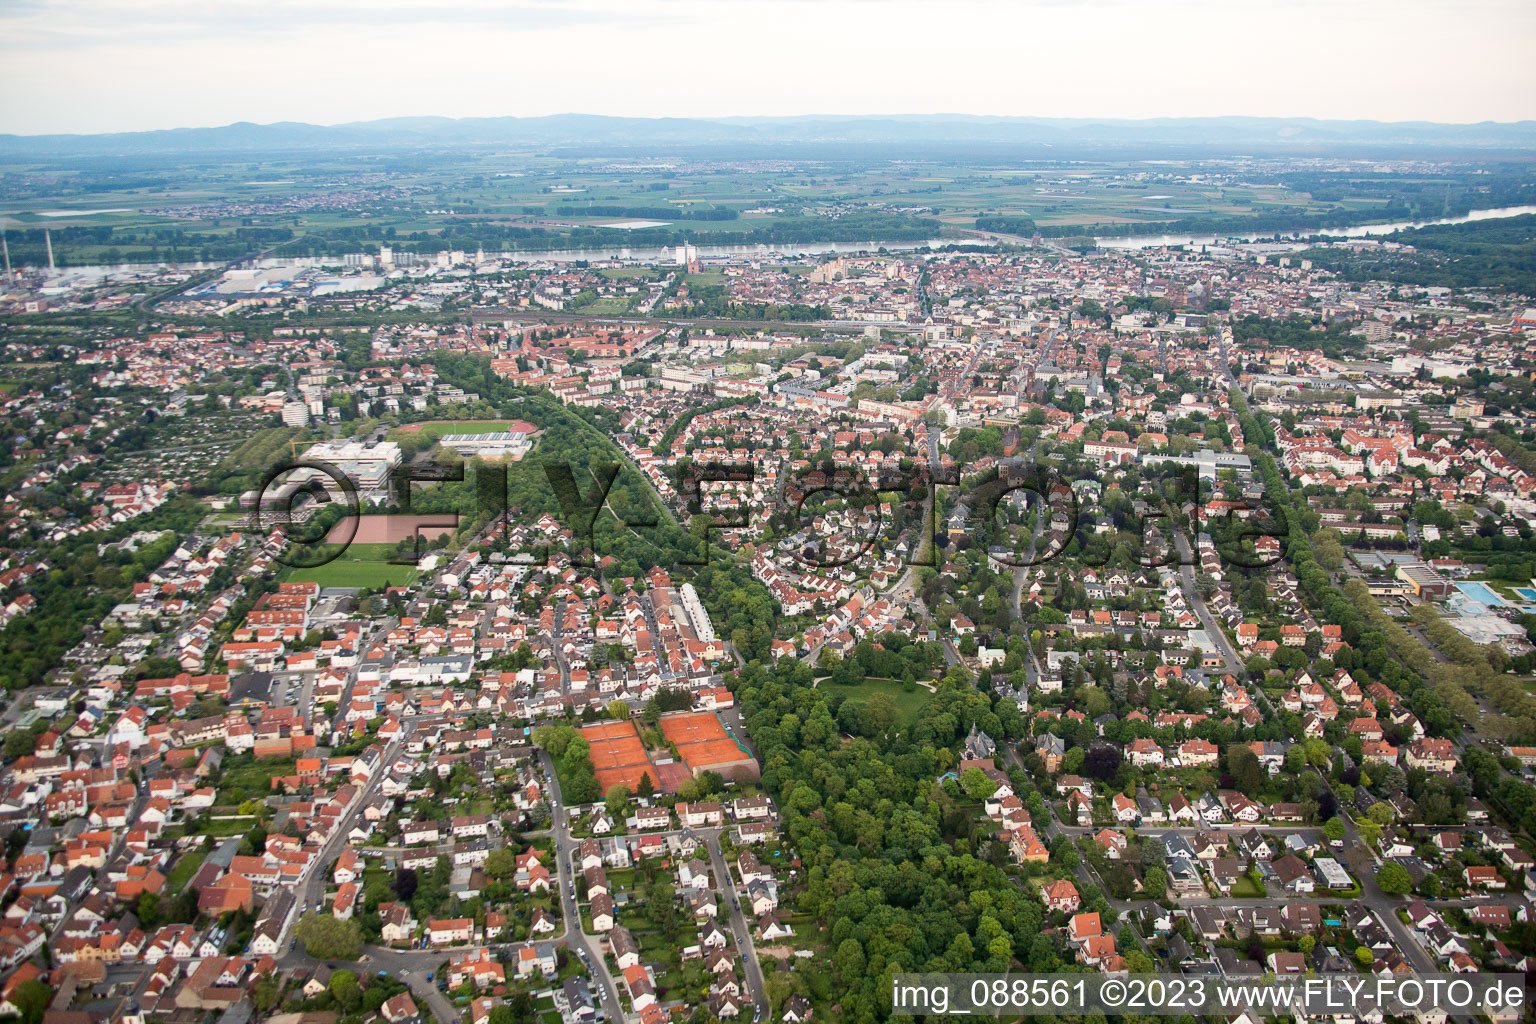 Luftbild von Ortsteil Hochheim in Worms im Bundesland Rheinland-Pfalz, Deutschland